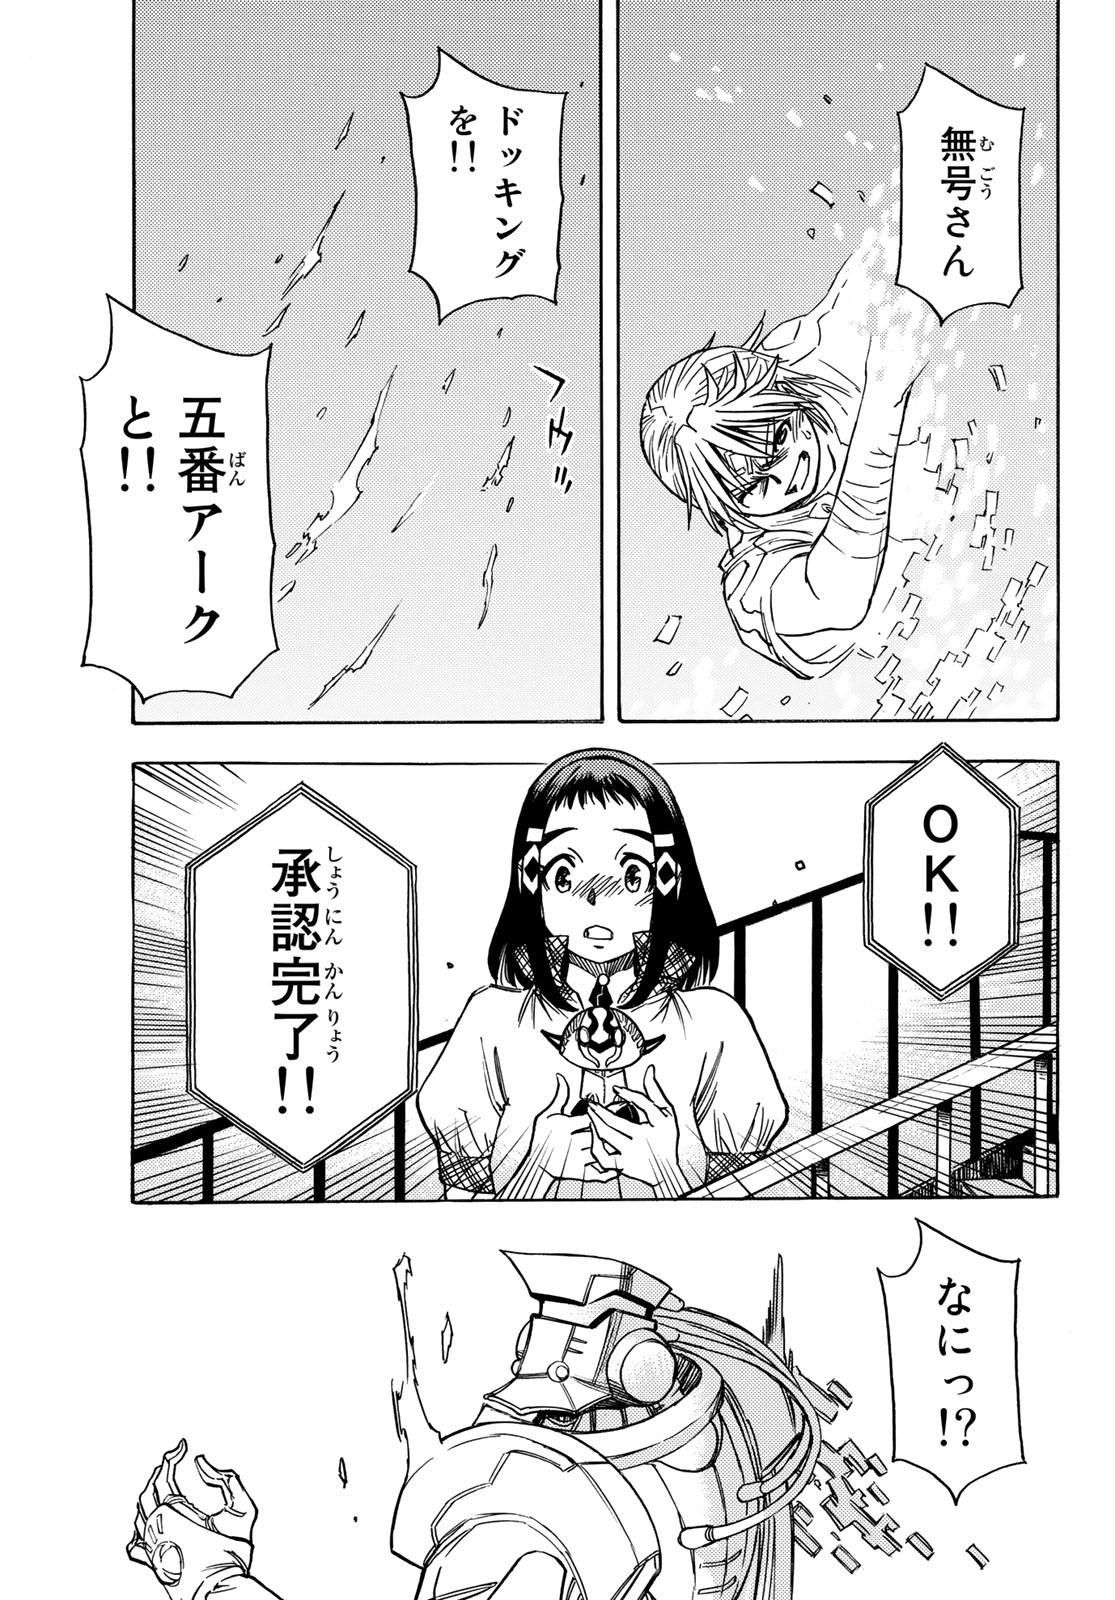 Mugou no Schnell Gear: Chikyuugai Kisouka AI - Chapter 39 - Page 13